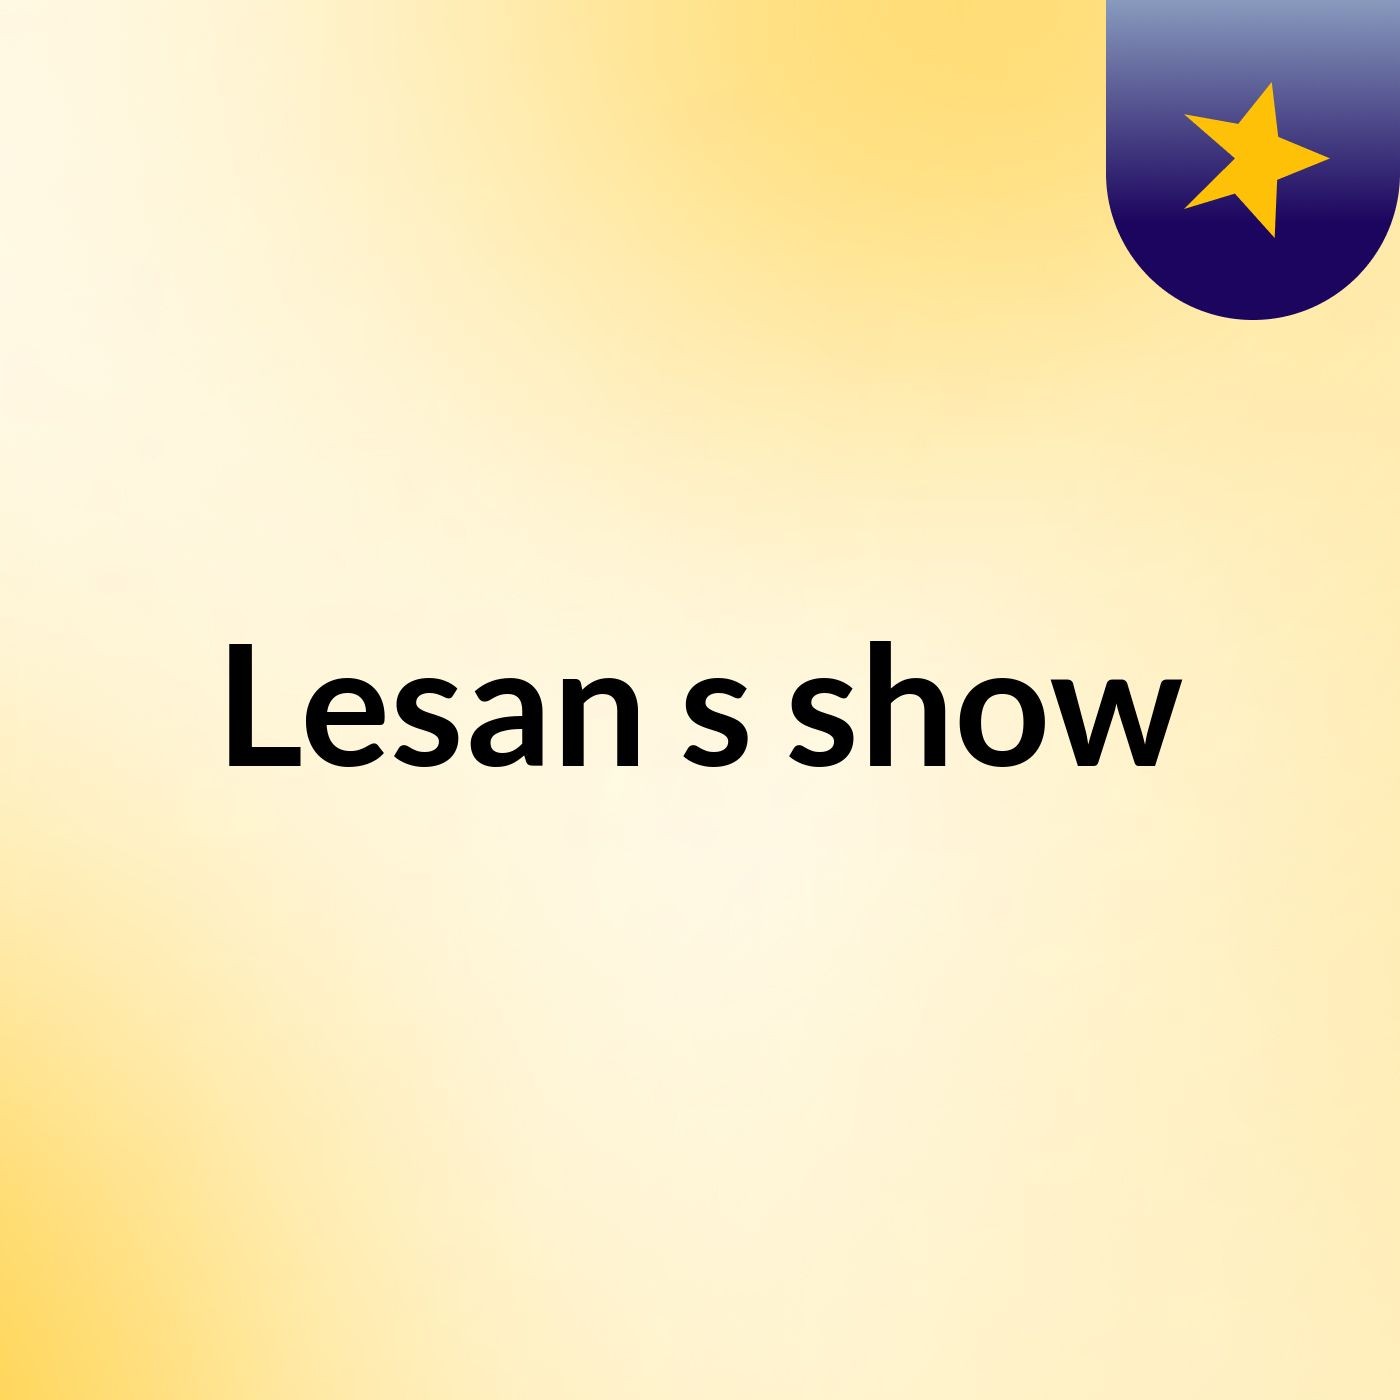 Lesan's show